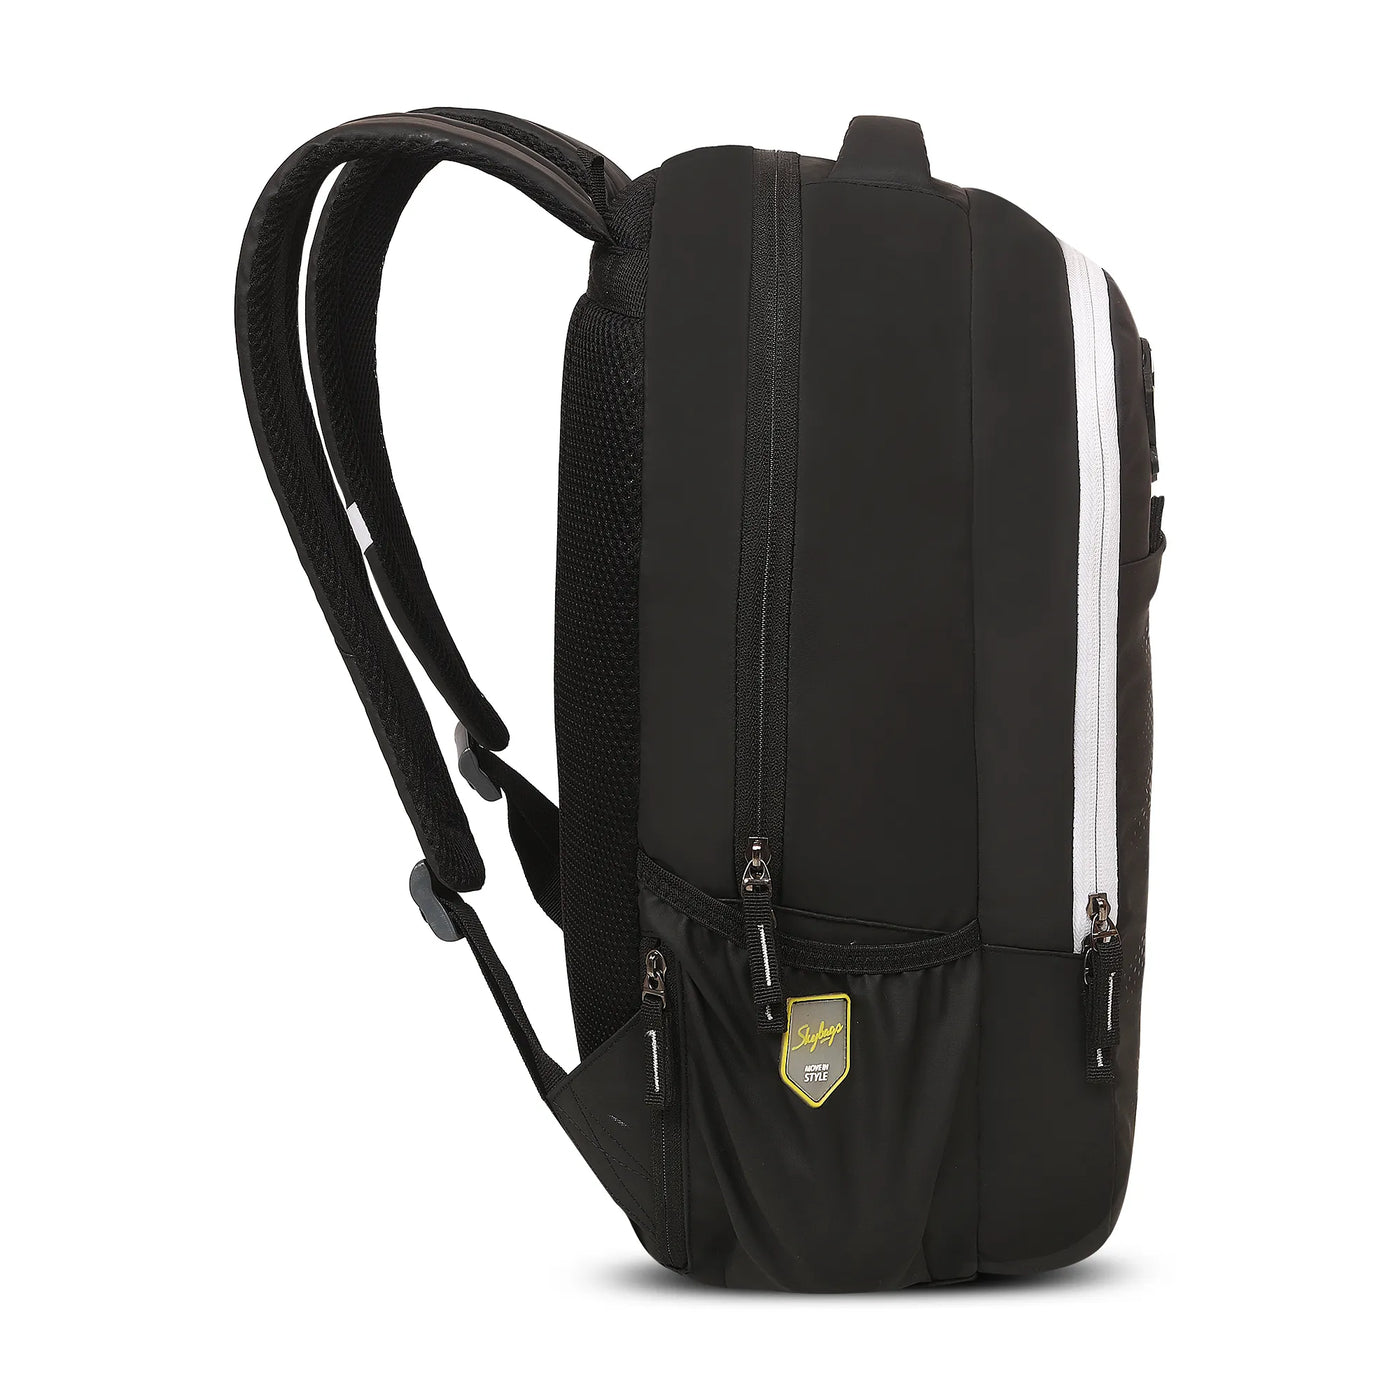 Skybags Kick "01 laptop Backpack Black"